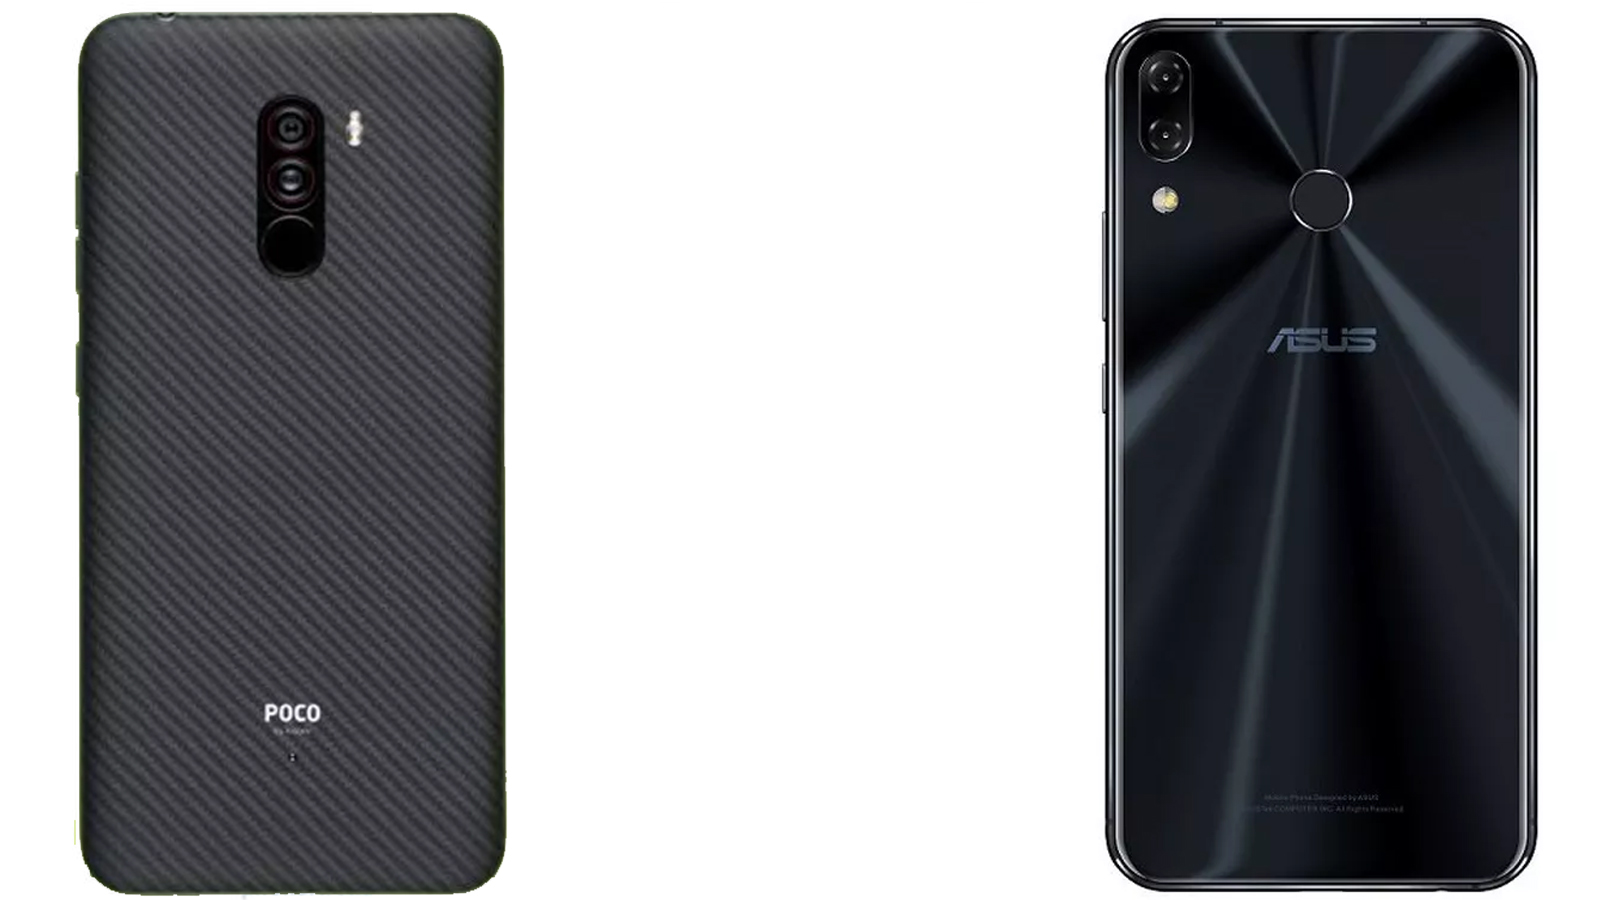 Poco F1 vs Asus Zenfone 5Z: Maaari Ka Bang Mabuhay Nang Walang Glass Back Smartphone?